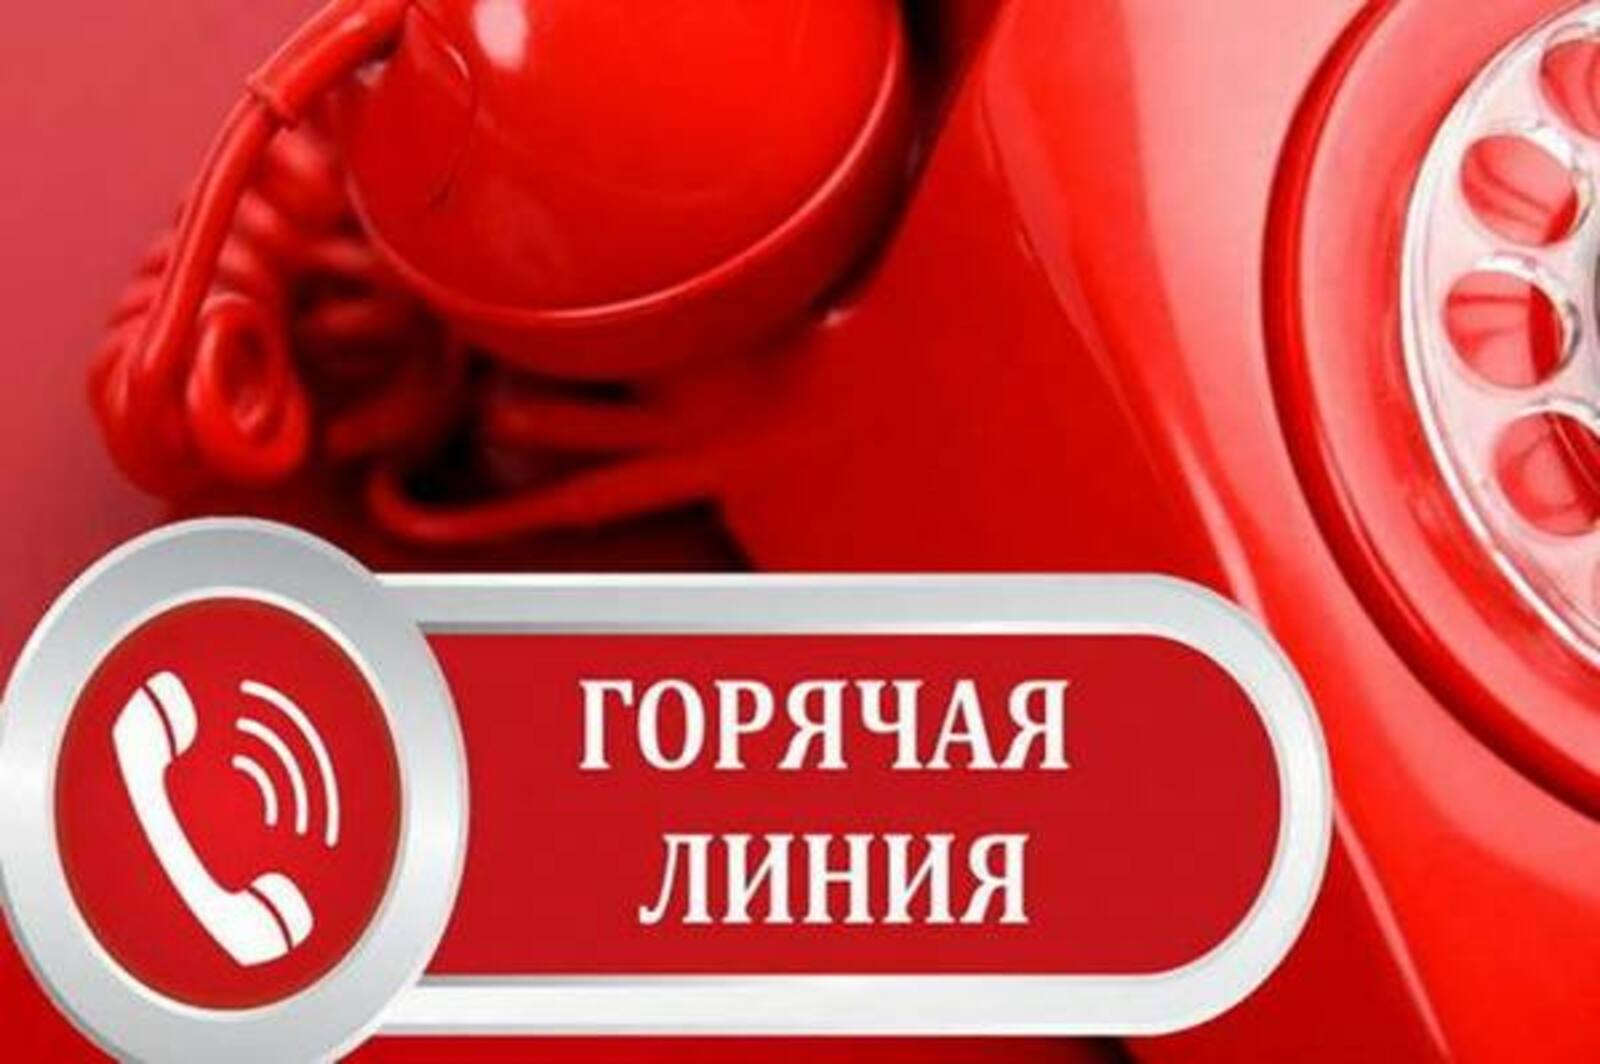 По вопросу школьного питания в Башкортостане открыта «горячая линия»